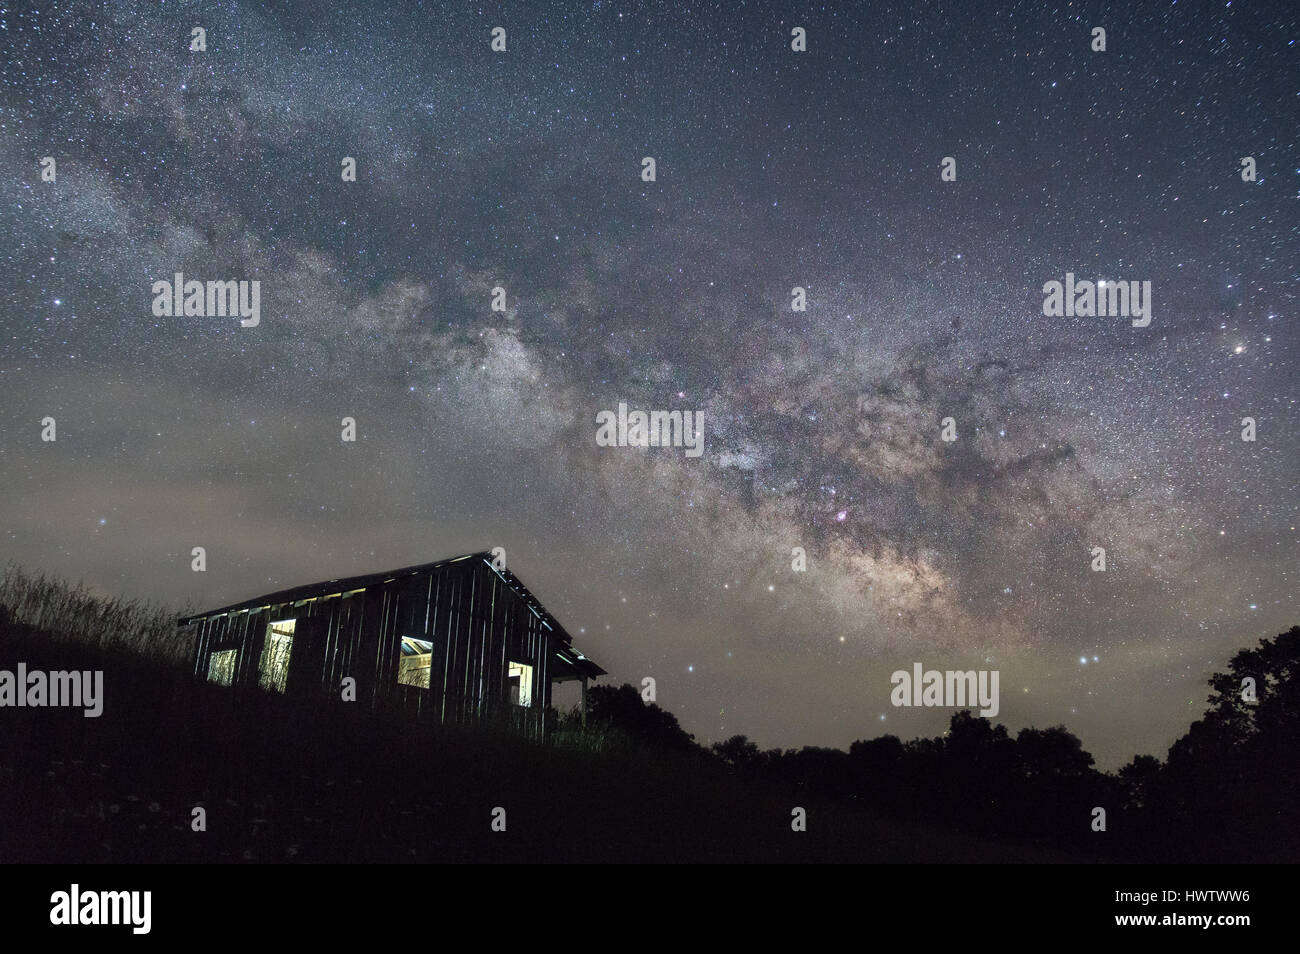 Le stelle e la Via Lattea nucleo galattico, separate da un sottile velo di nebbia, incombono su di un paesaggio scuro e un lone shack illuminato dall'interno. Foto Stock